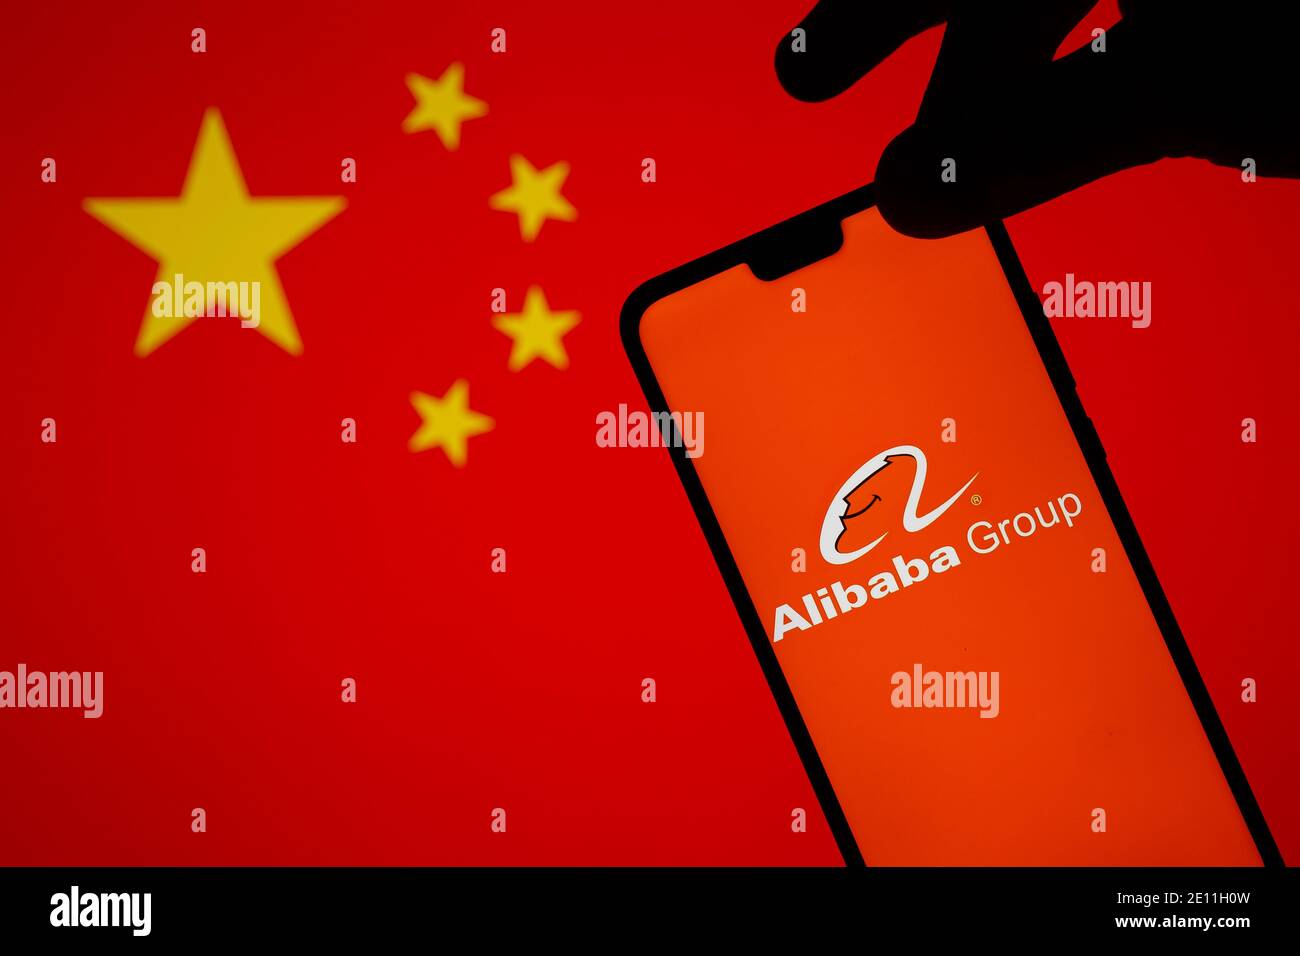 Stafford, Royaume-Uni - janvier 3 2021: Logo Alibaba sur une silhouette de smartphone qui est tenue sur le bord. Concept d'enquête gouvernementale Banque D'Images